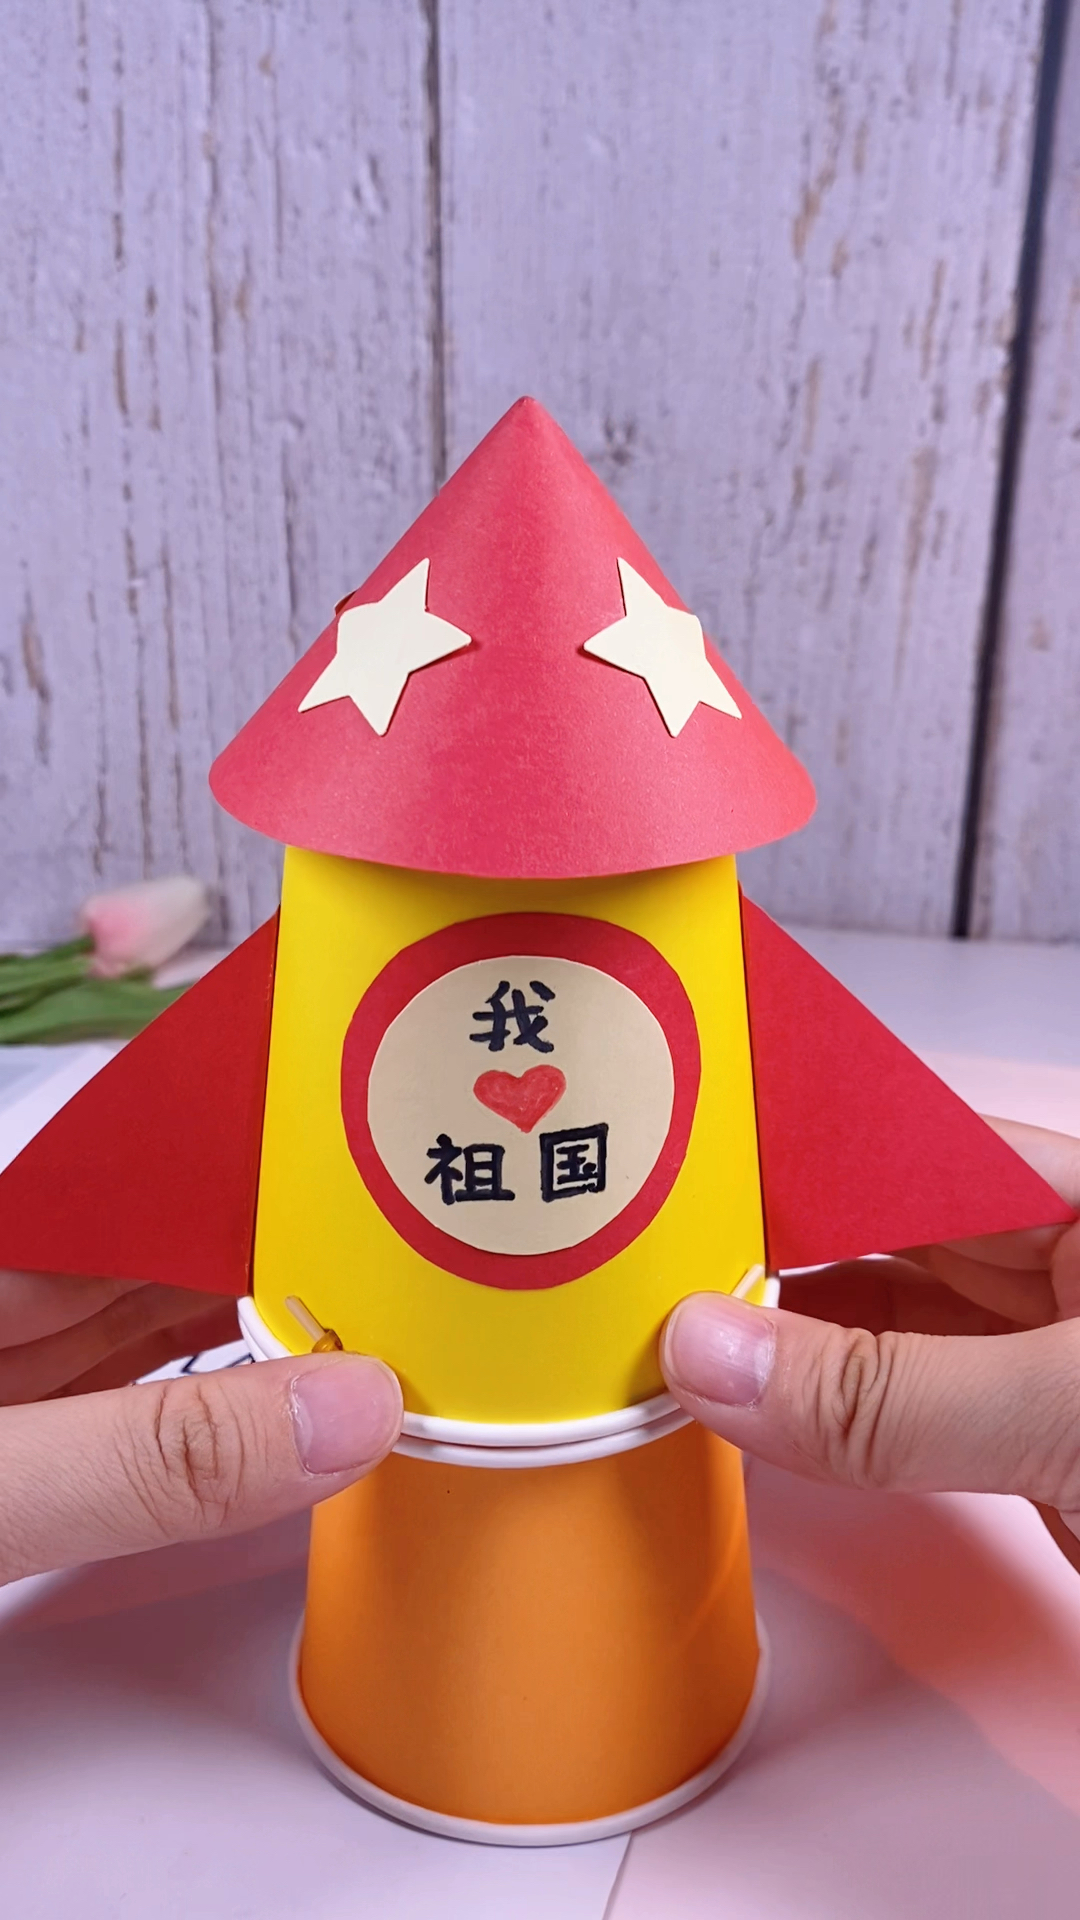 手工制作国庆节做一个会发射的火箭祝祖国繁荣昌盛